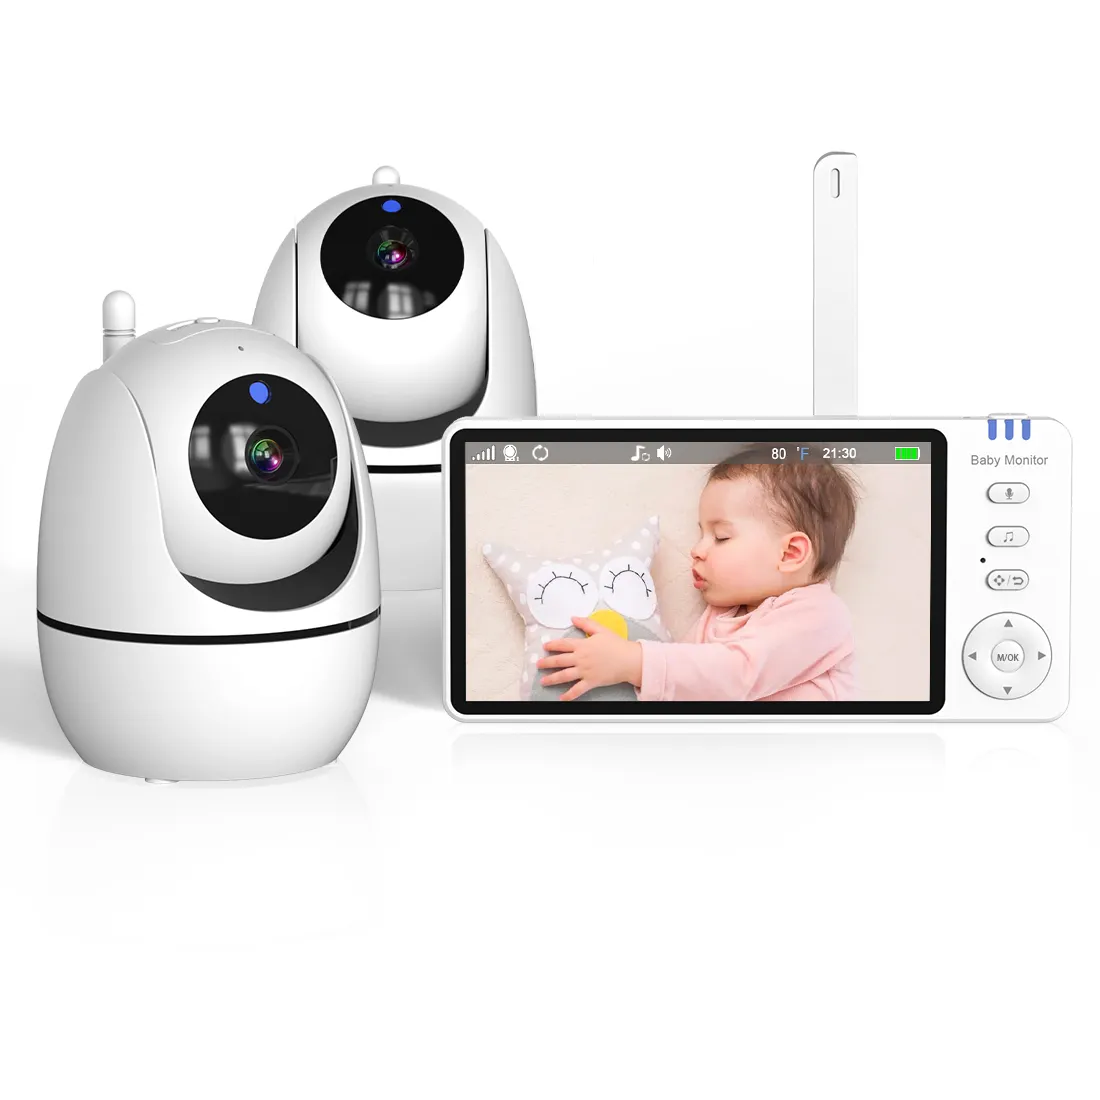 Lo más nuevo, 5,0 pulgadas, Audio bidireccional, temperatura, visión nocturna, detección de llanto de bebé, monitoreo de vídeo, Monitor de bebé con cámara